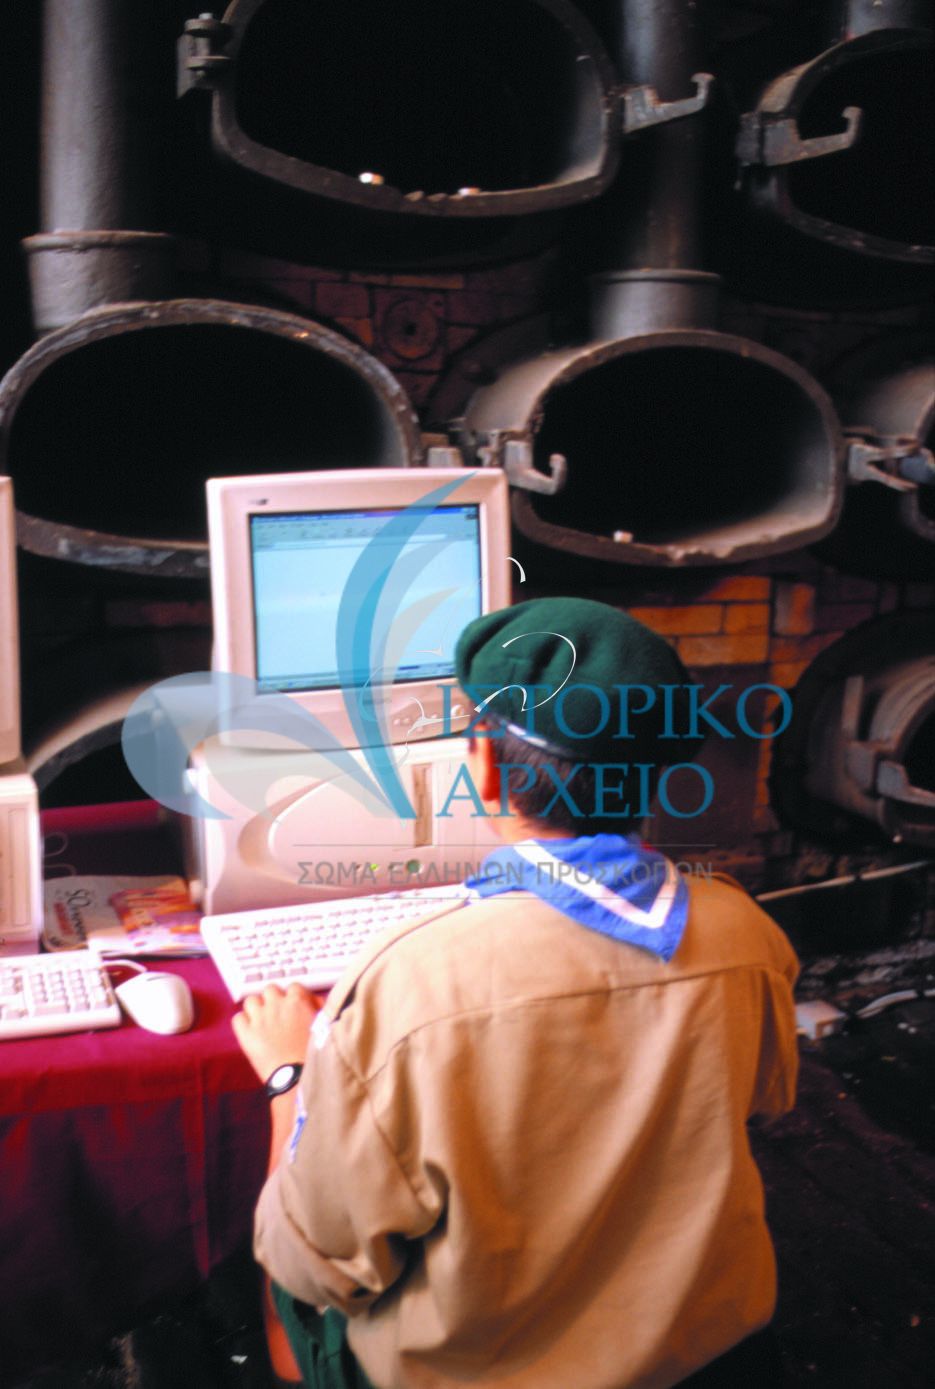 Πρόσκοπος περιεργάζεται με δέος υπολογιστή που διαθέτει σύνδεση στο διαδίκτυο στην εκδήλωση για τα 90 χρόνια του ΣΕΠ "Προσκοπικά Δρώμενα" που έγινε στην Αθήνα το 2000.